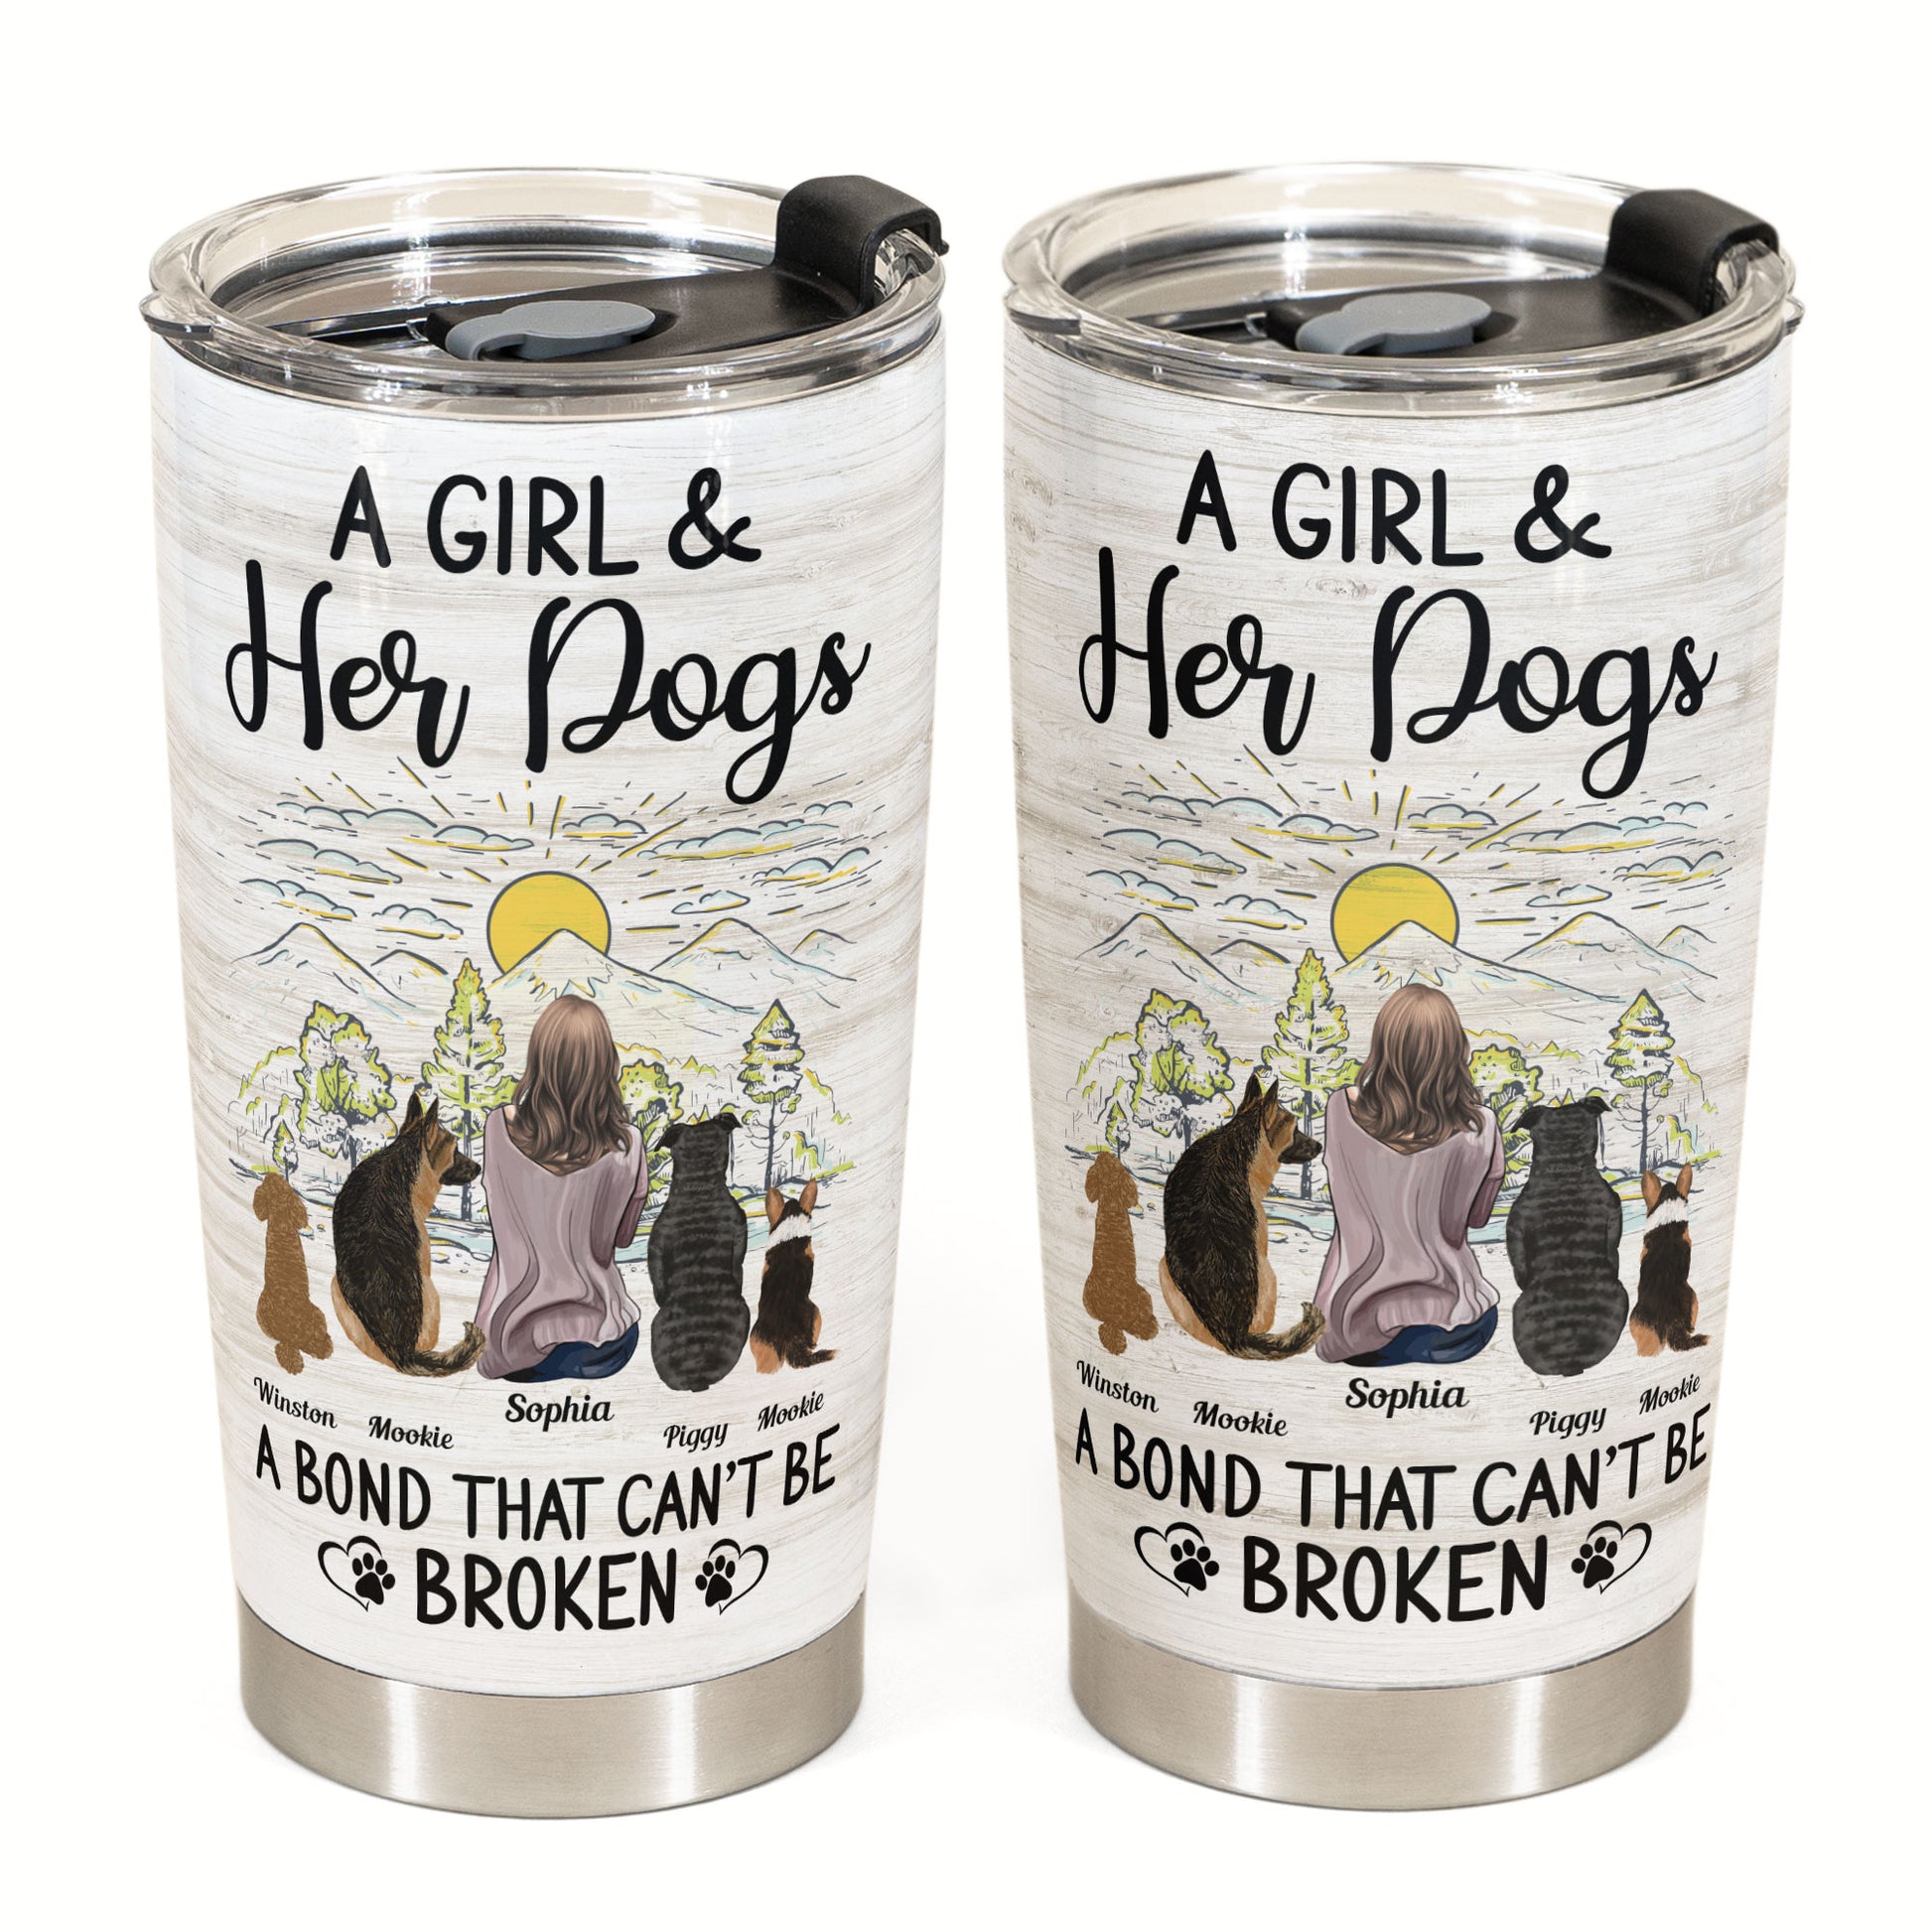 Fur Mama Mug - Girl and Dogs - Custom Coffee Dog Mugs For Dog Mom